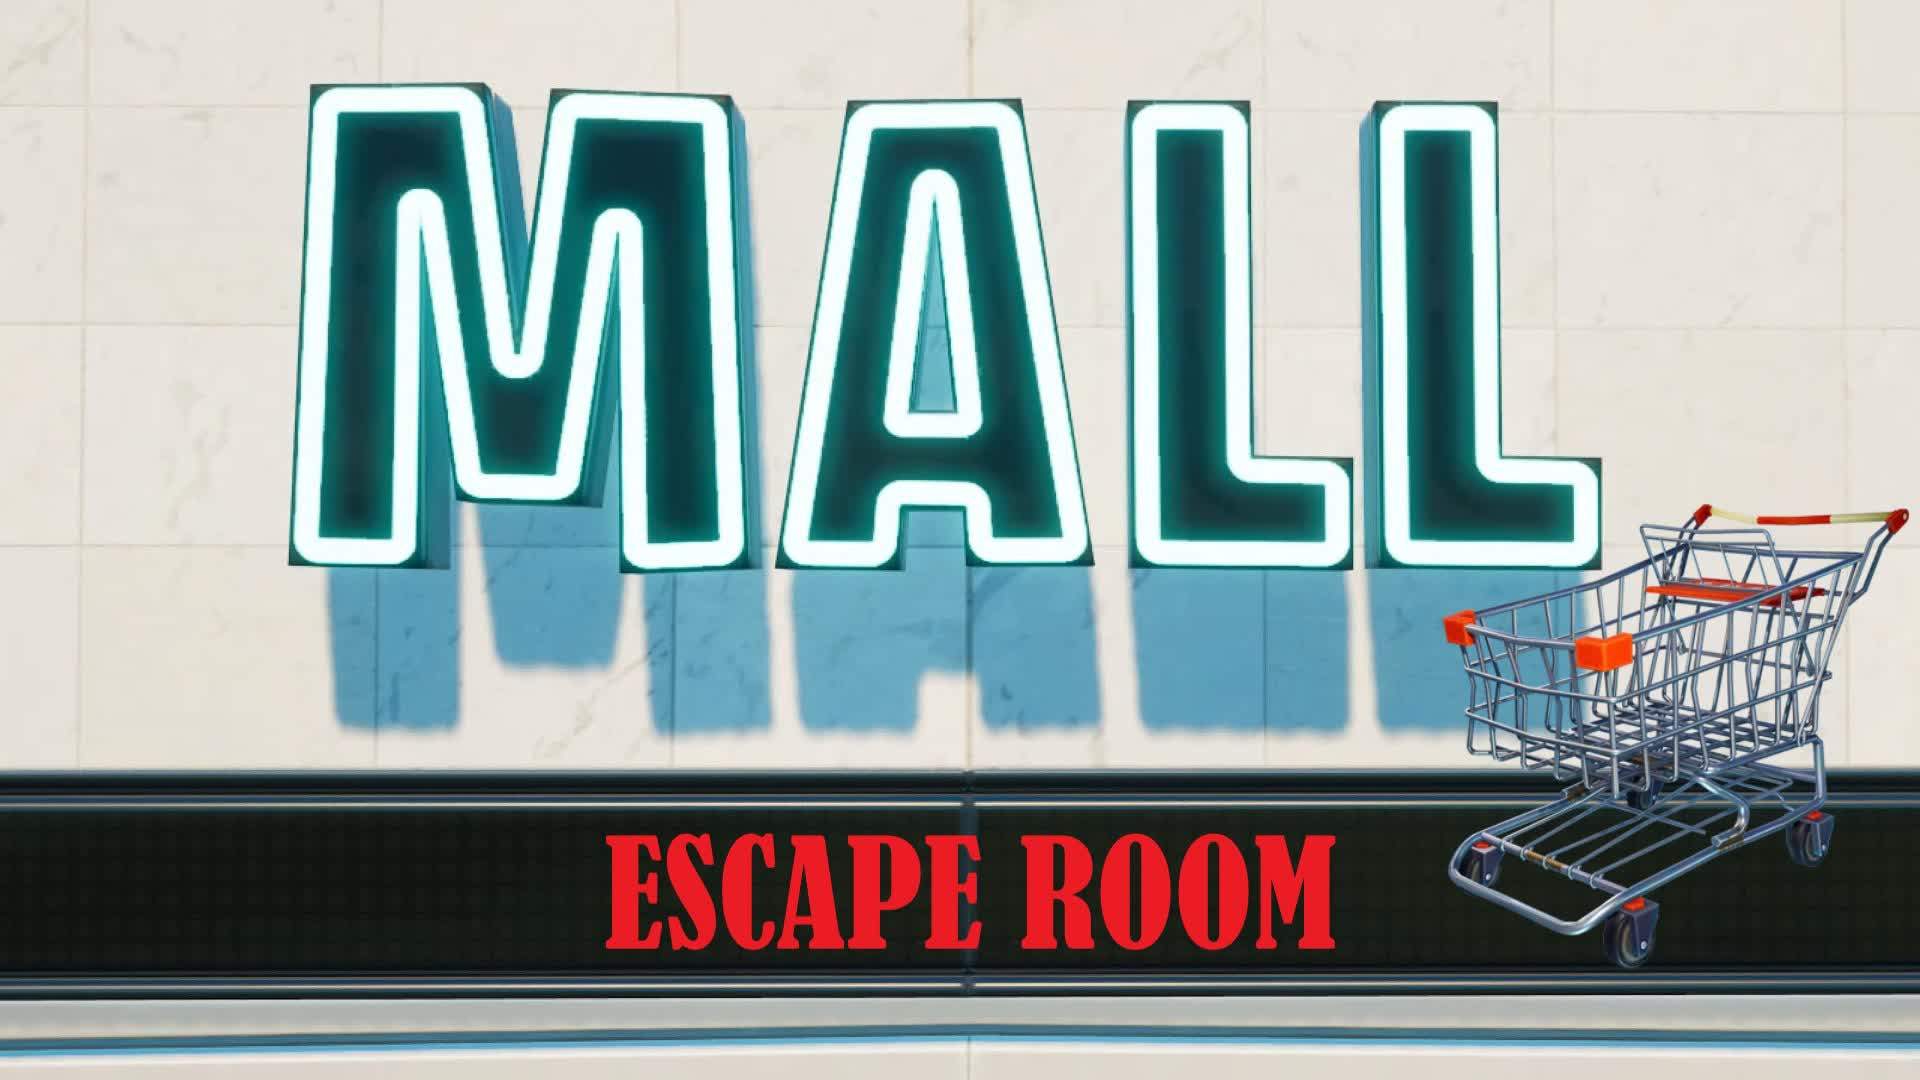 Mall escape